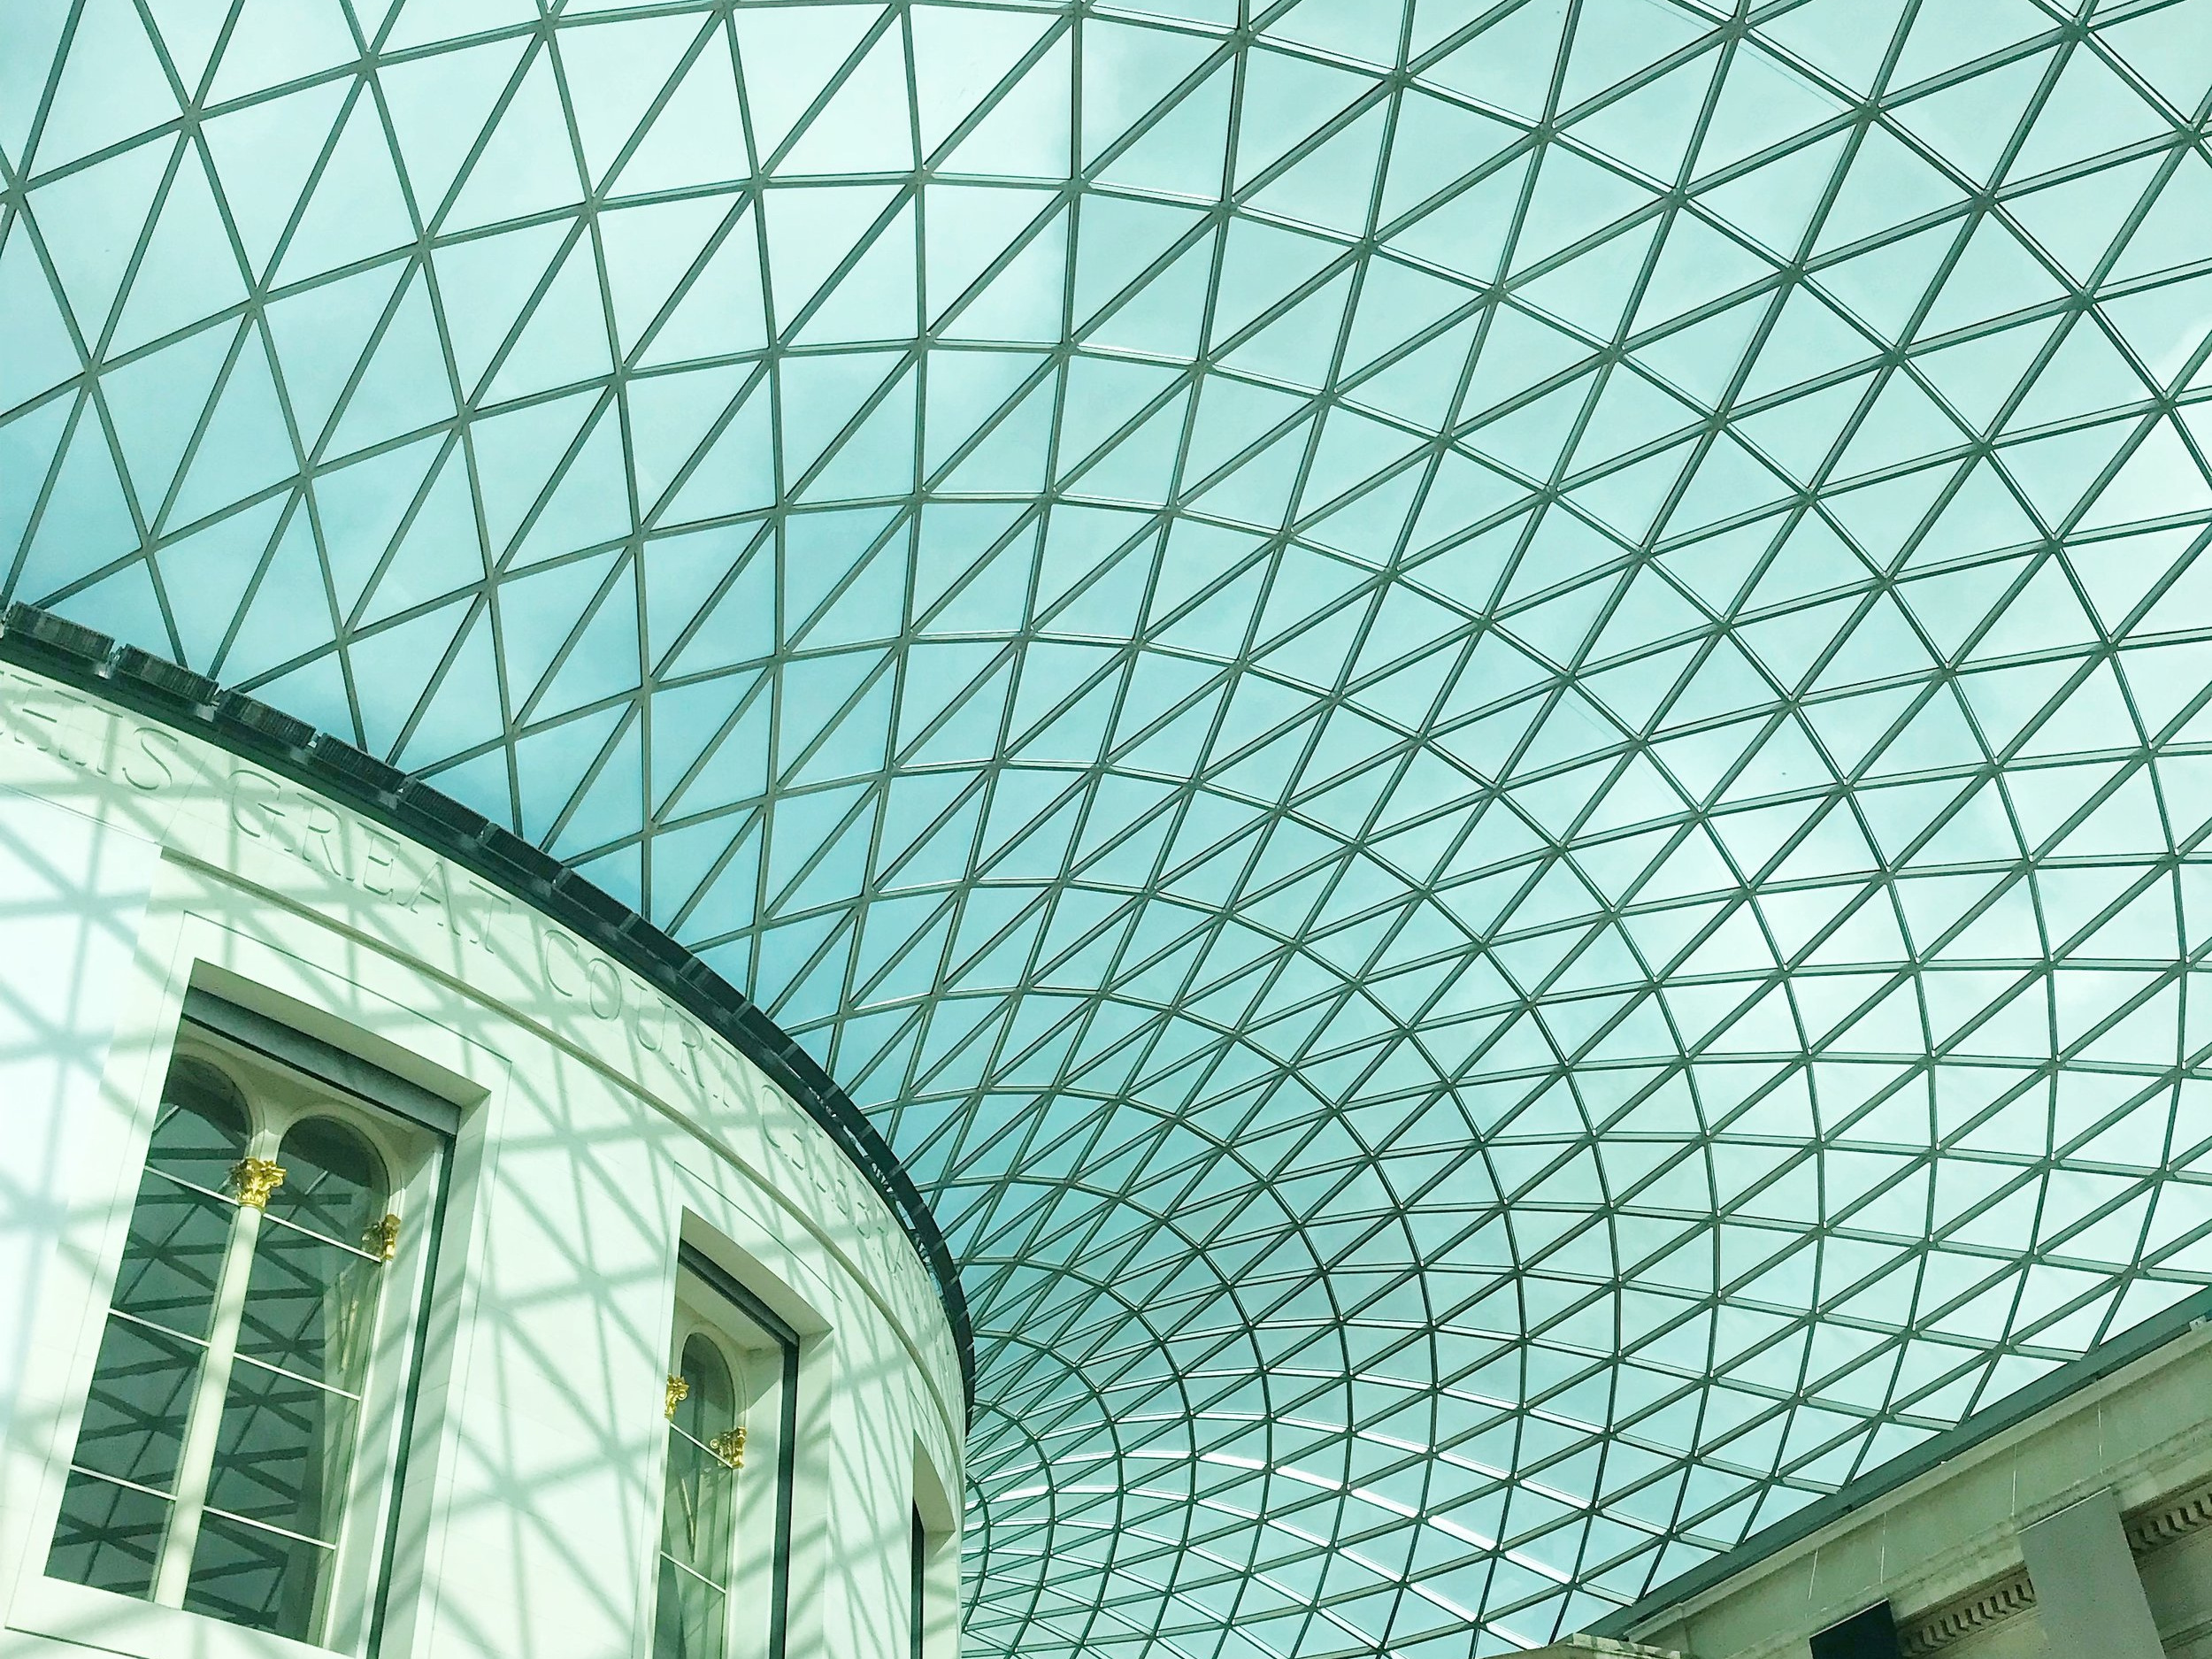  Visit London - British Museum 